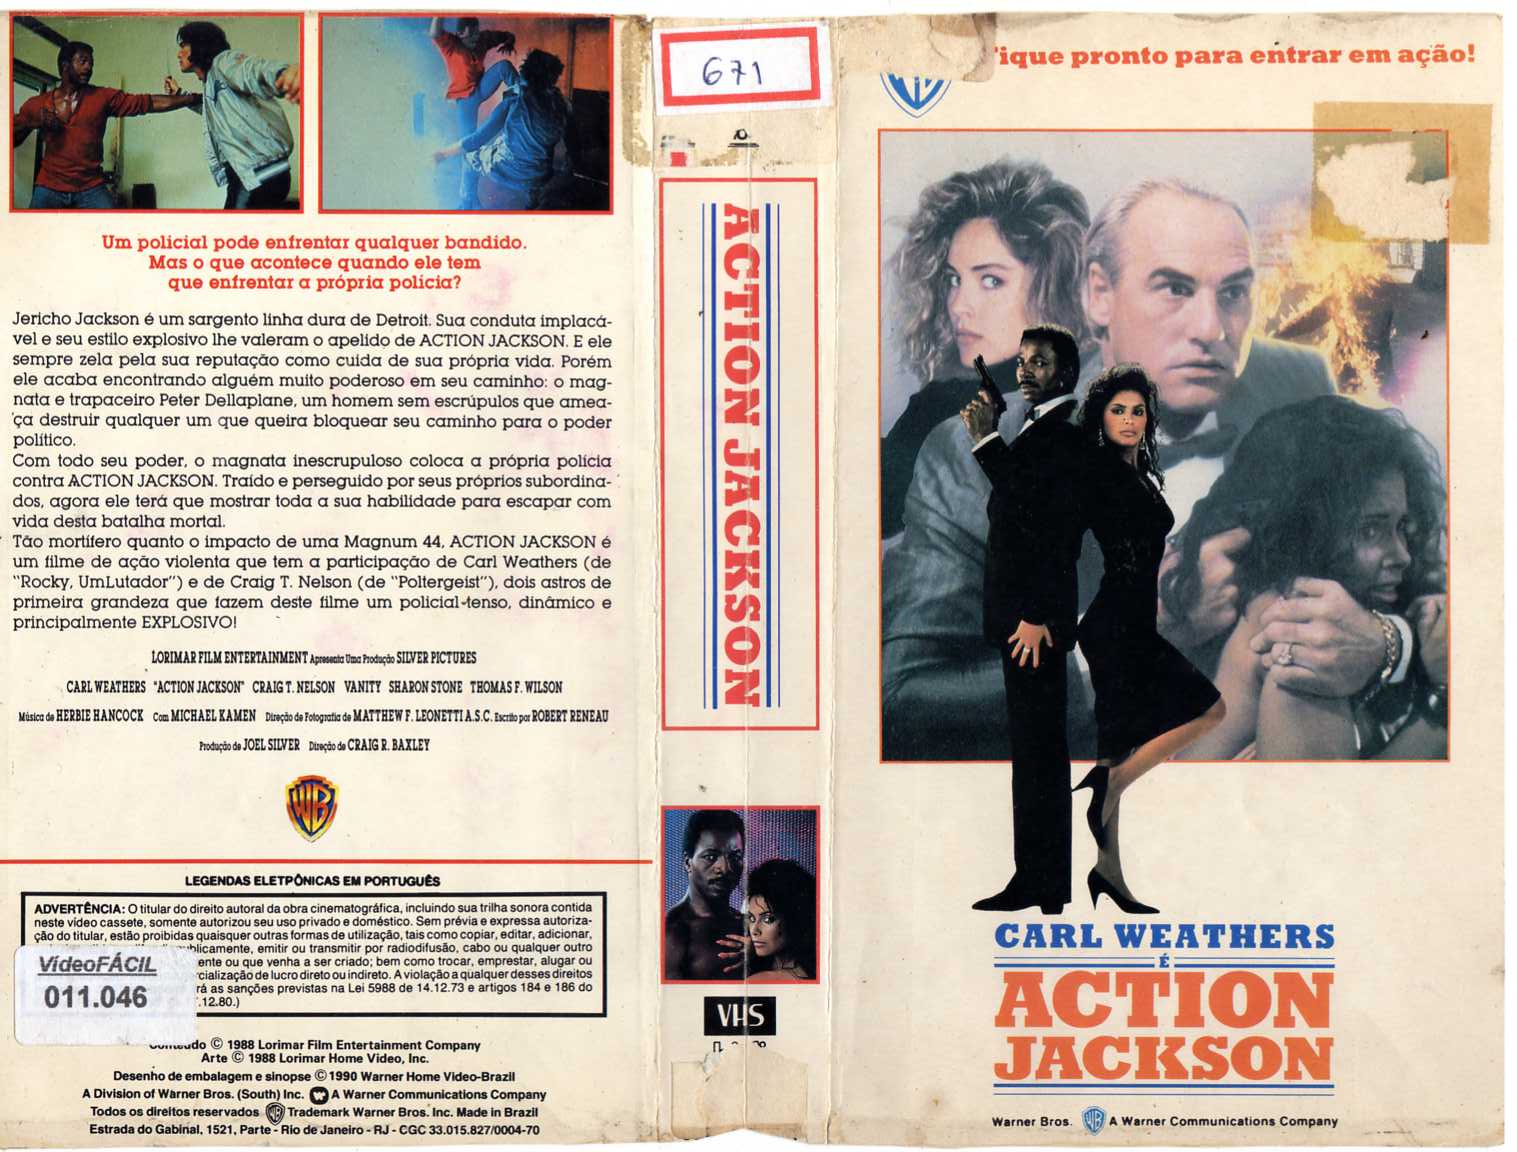 devotudoaocinema.com.br - Rebobinando o VHS - "Action Jackson", com CARL WEATHERS